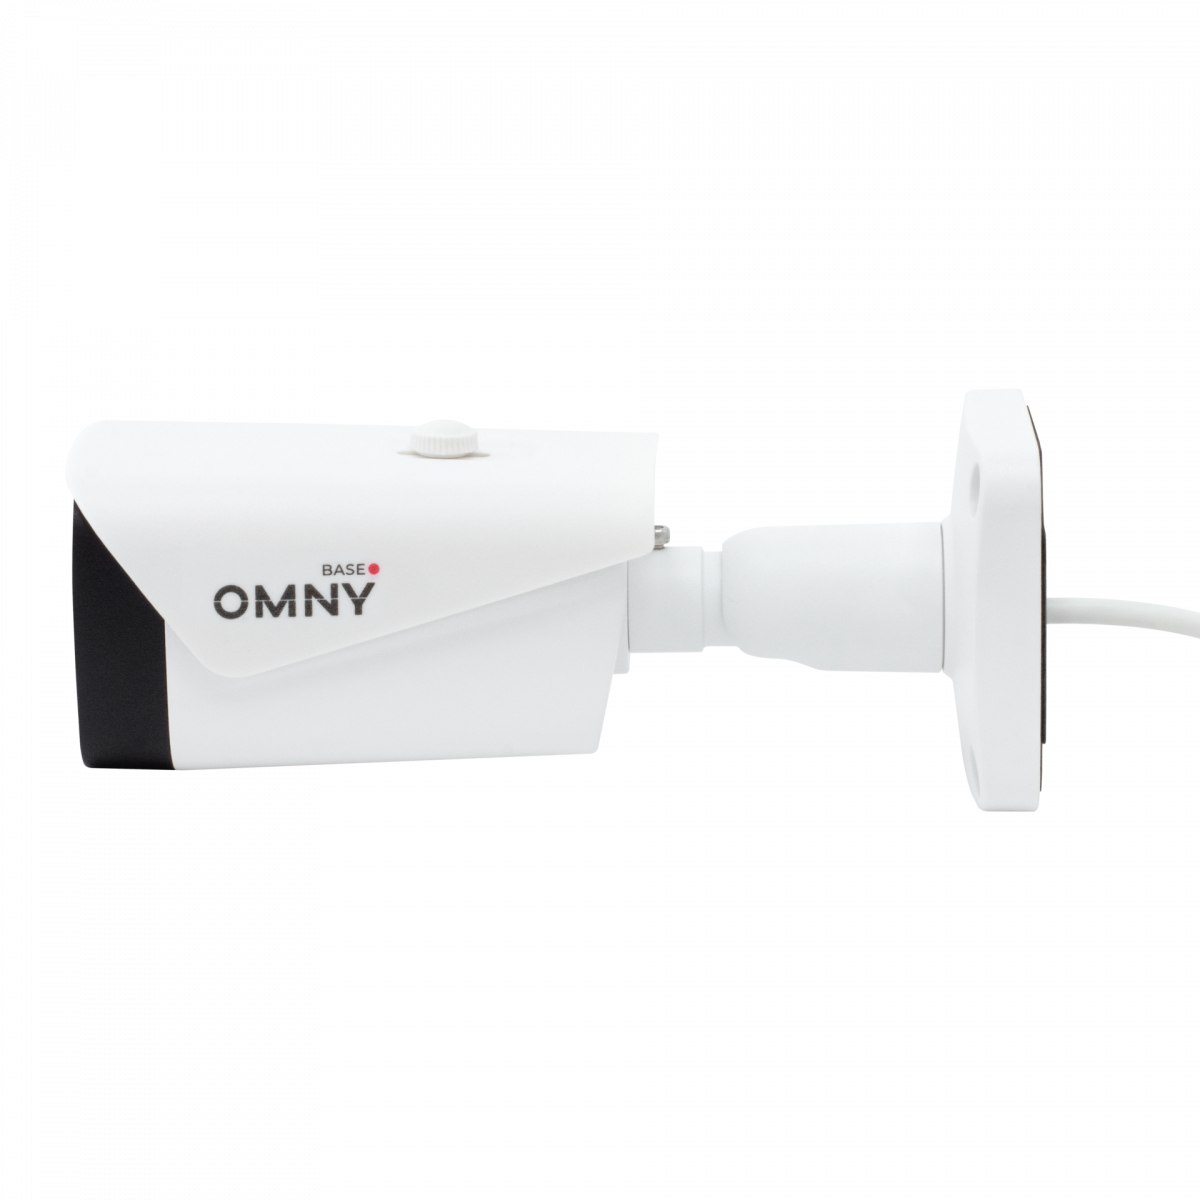 Камера сетевая буллет 2Мп OMNY BASE miniBullet2E-WDS-SDL-C 36 с двойной подсветкой и микрофоном